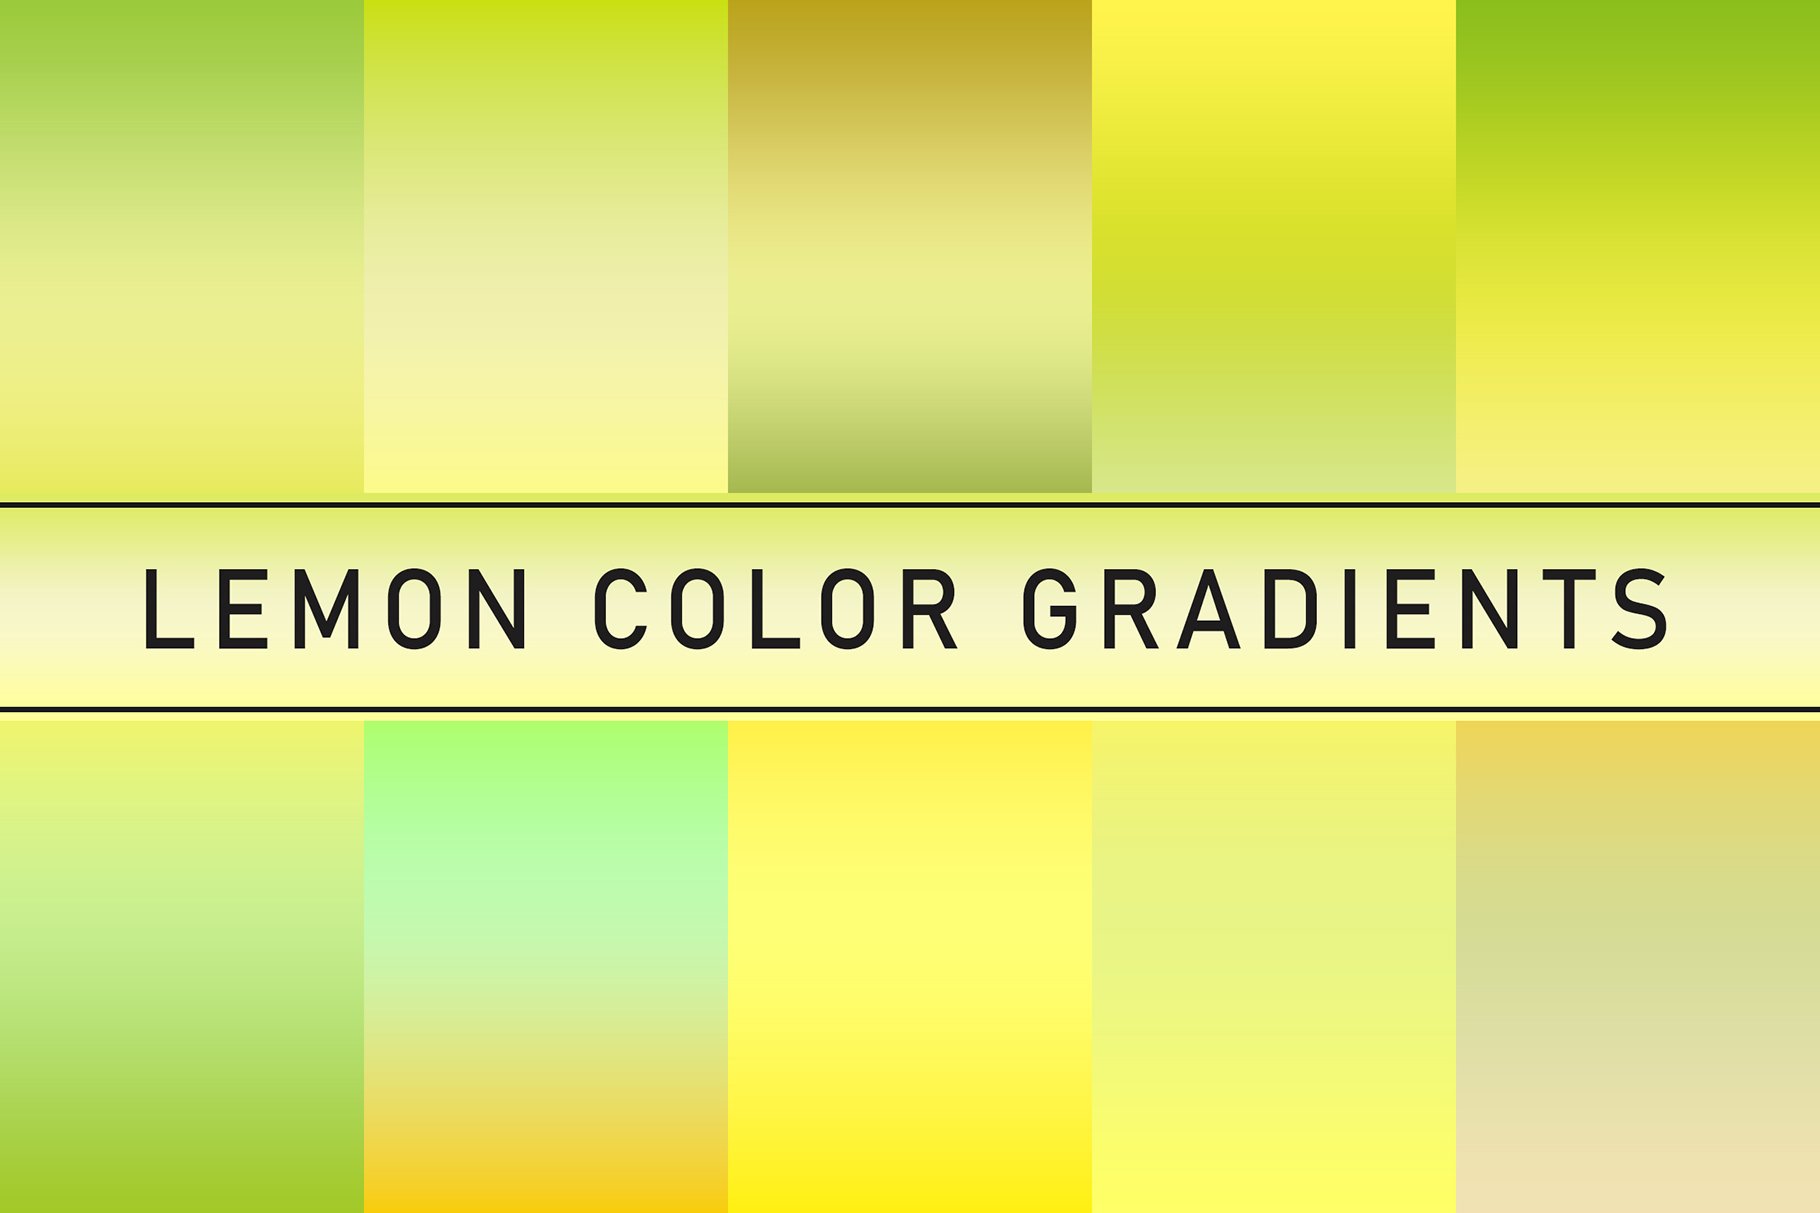 Lemon Color Gradientscover image.